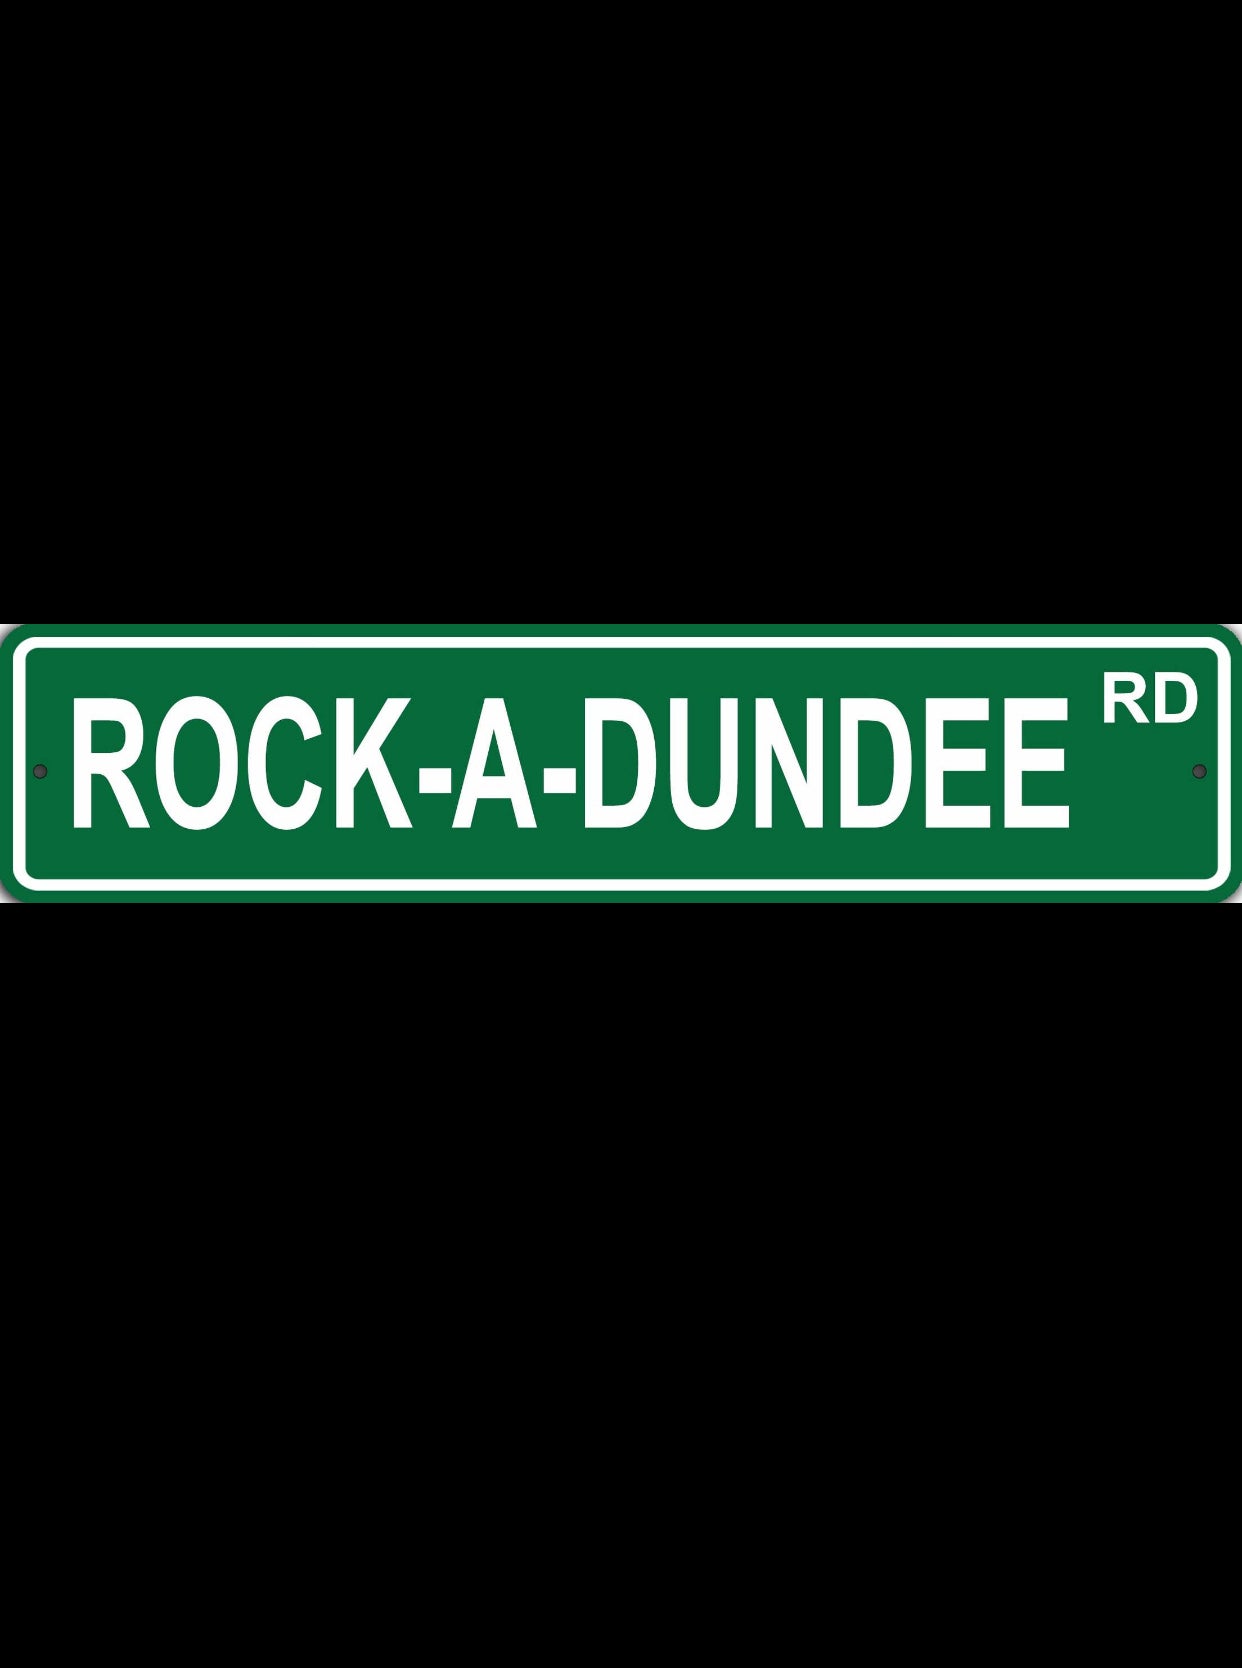 ROCK-A-DUNDEE RD Street Sign